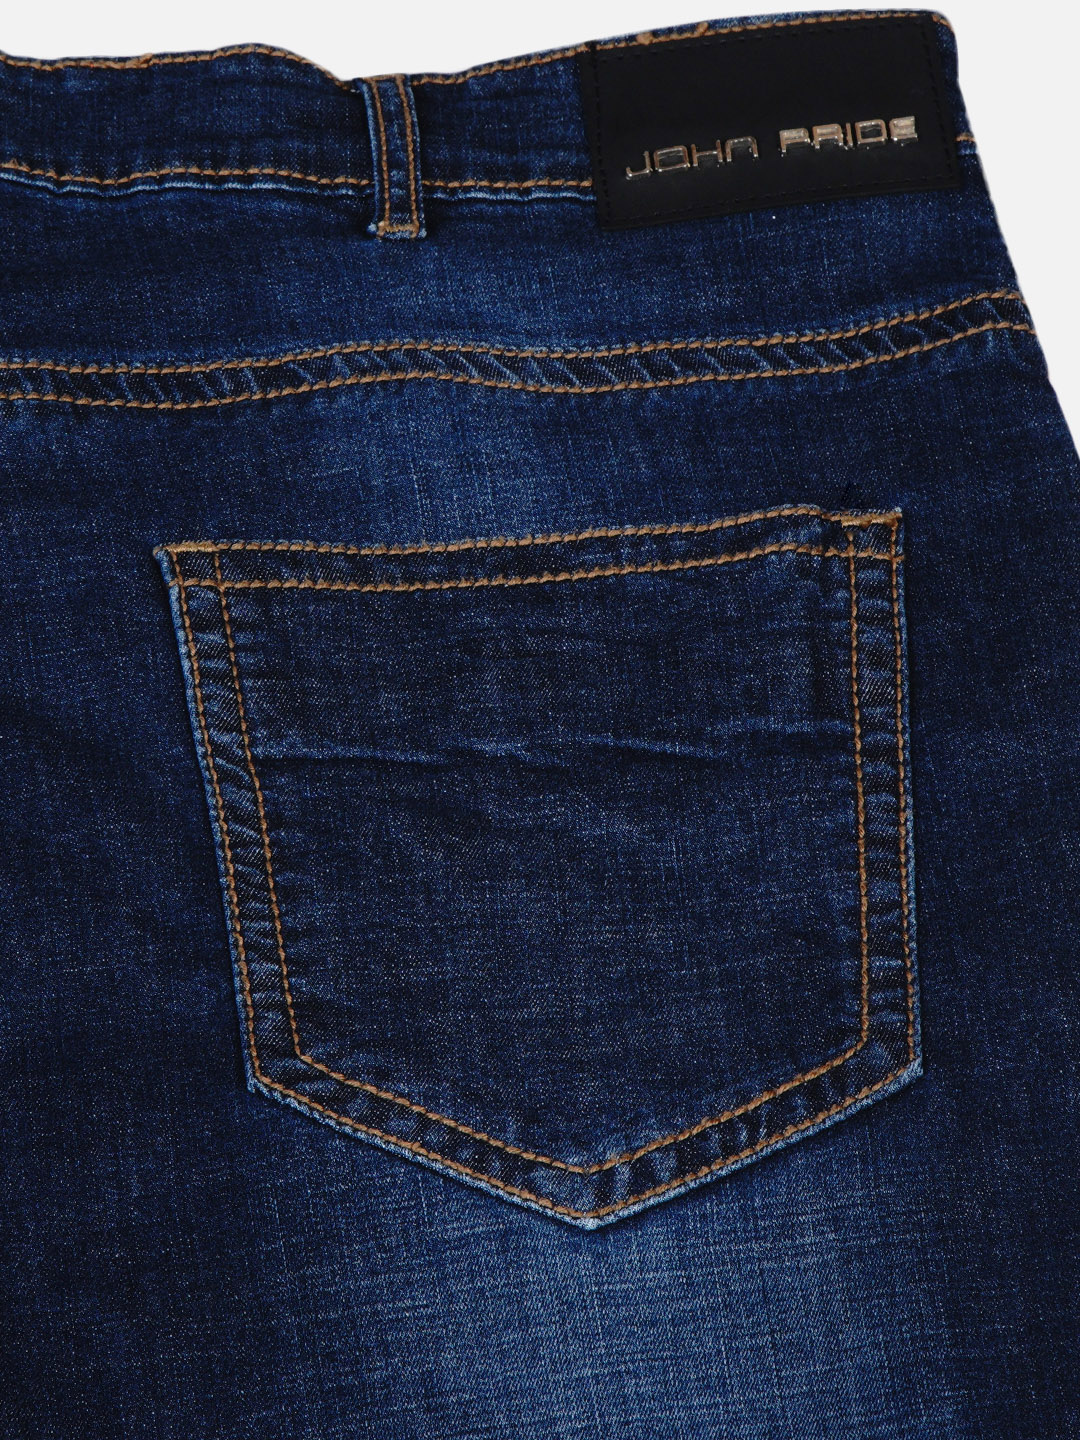 bottomwear/jeans/JPJ6033/jpj6033-2.jpg